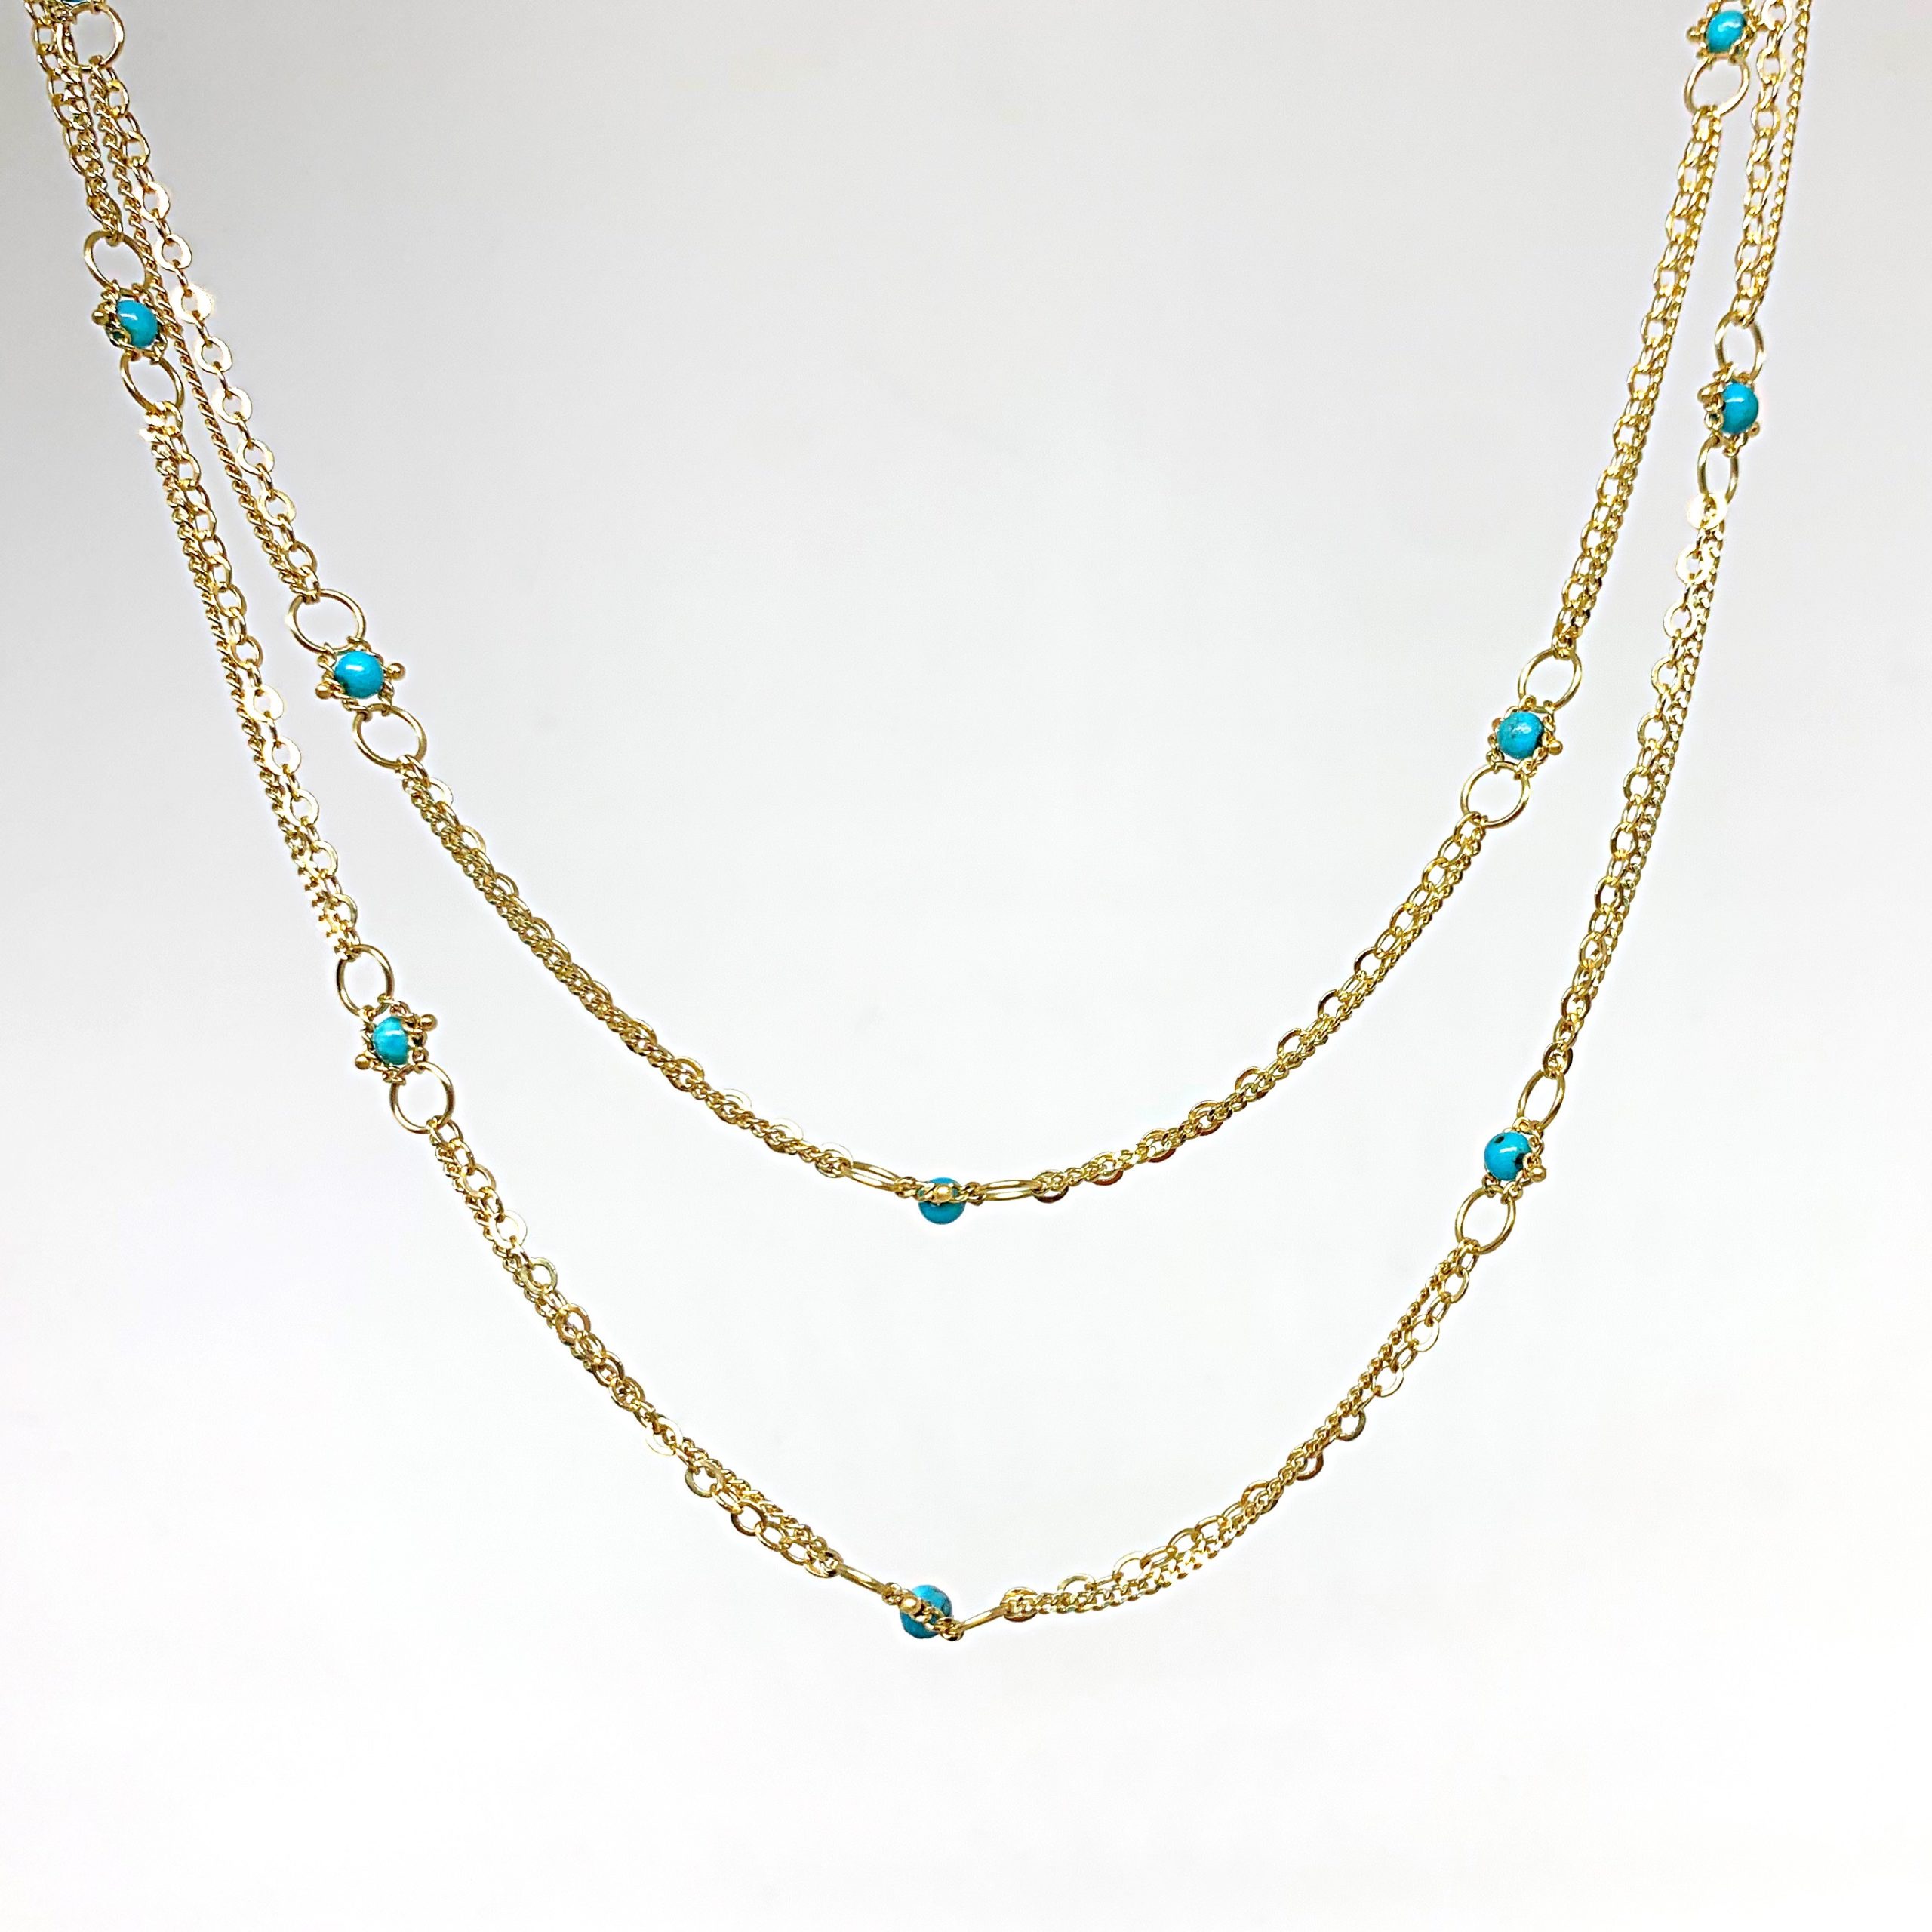 Turquoise Whisper Chain | Von Bargen's Jewelry